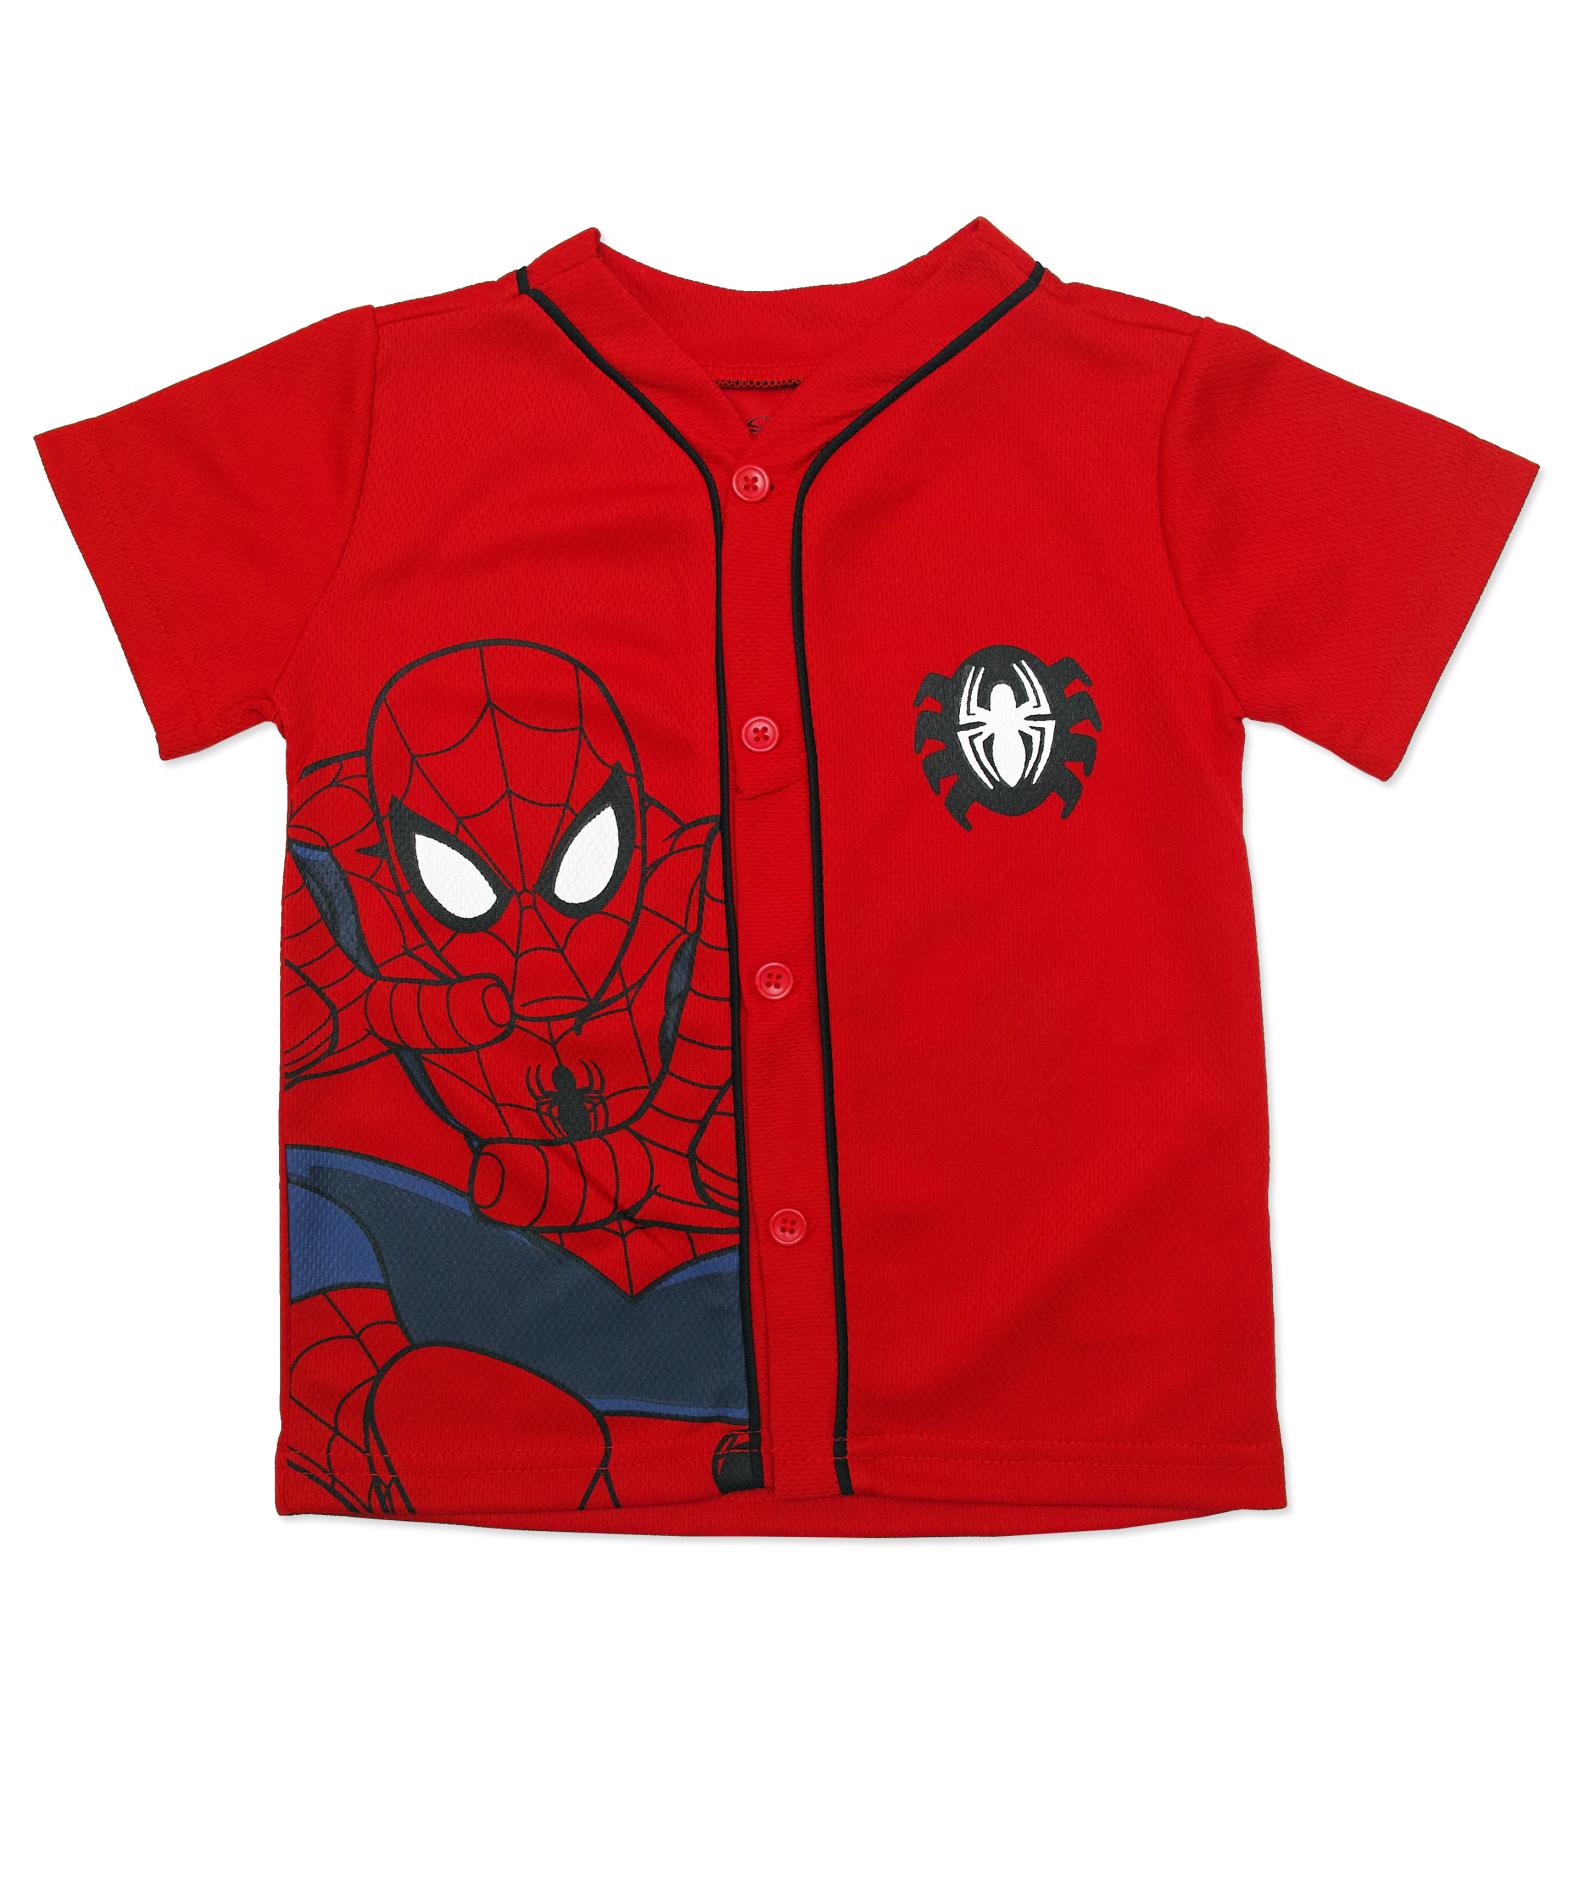 Marvel Spider-Man Toddler Boy's Graphic Shirt